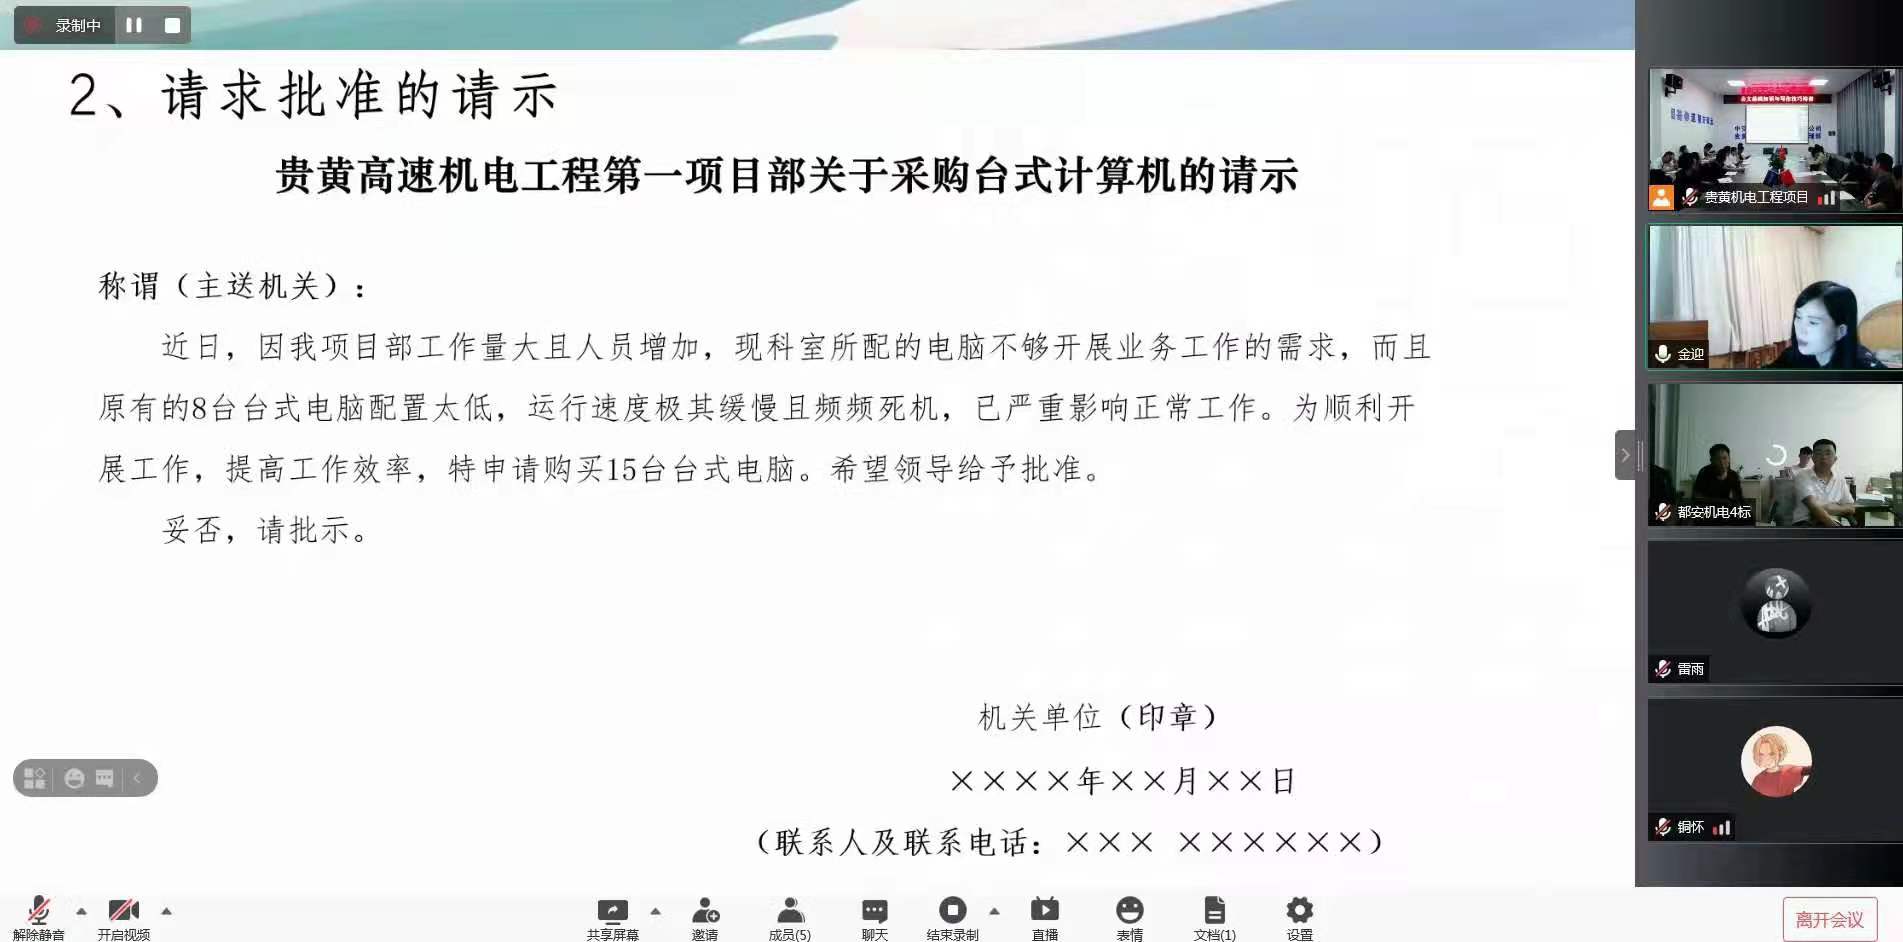 中交二公局贵黄高速机电《公文写作技能提升》(图2)